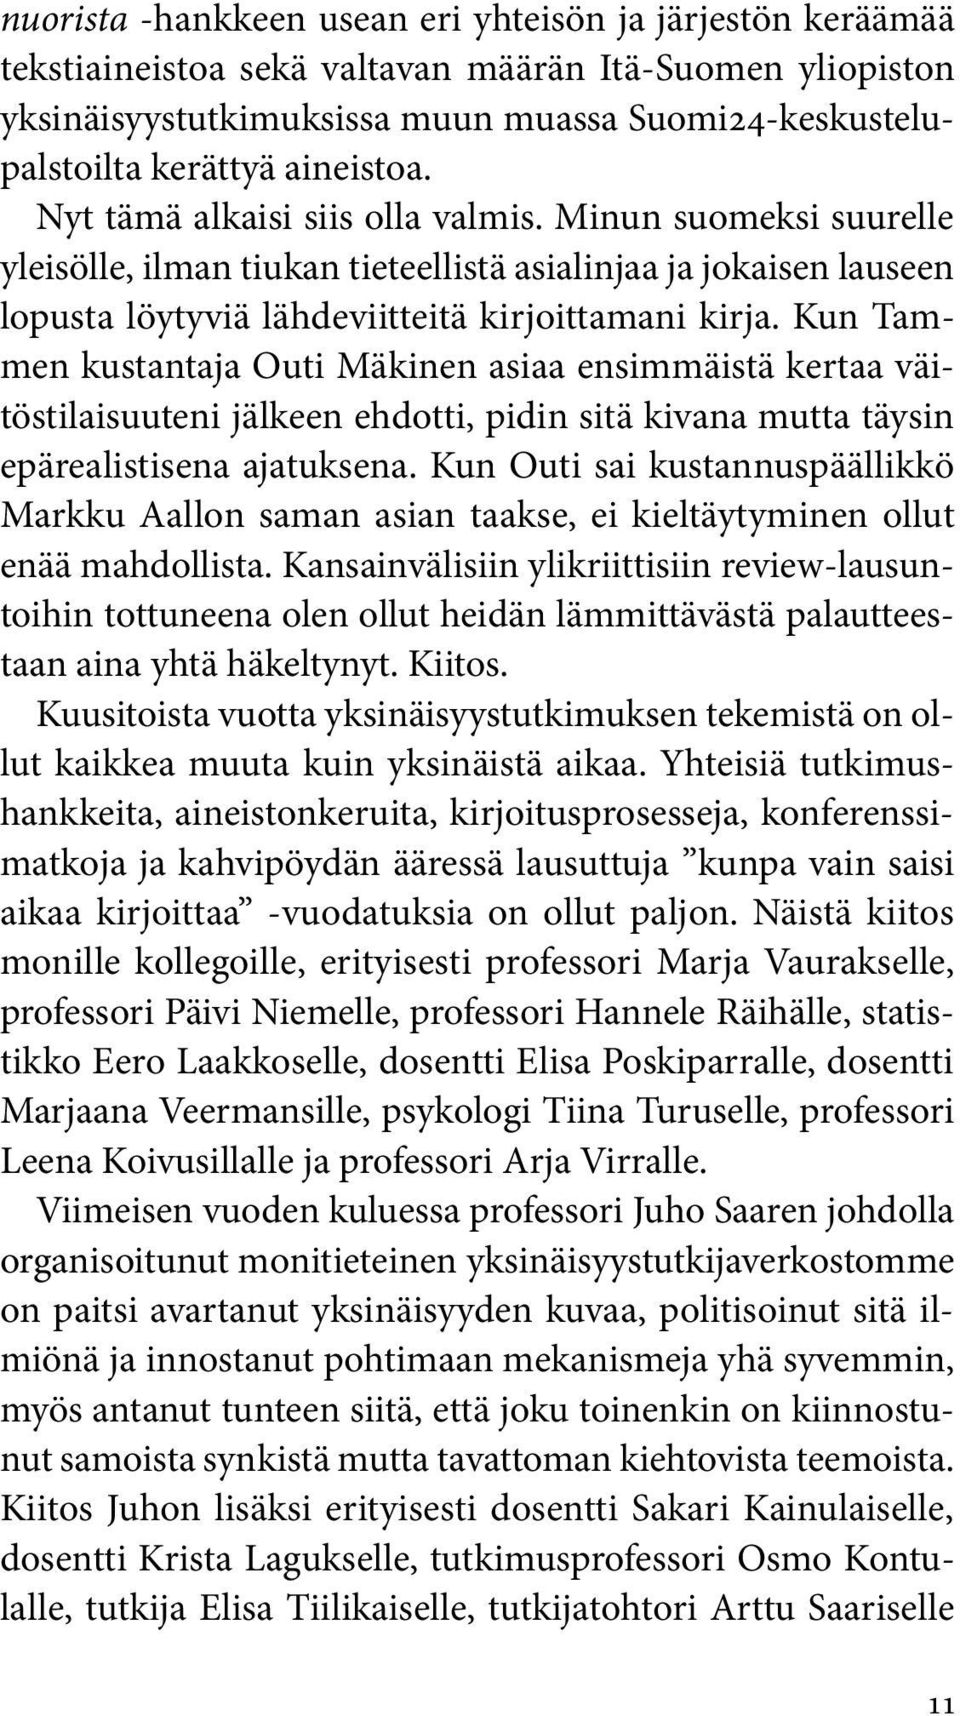 Kun Tammen kustantaja Outi Mäkinen asiaa ensimmäistä kertaa väitöstilaisuuteni jälkeen ehdotti, pidin sitä kivana mutta täysin epärealistisena ajatuksena.